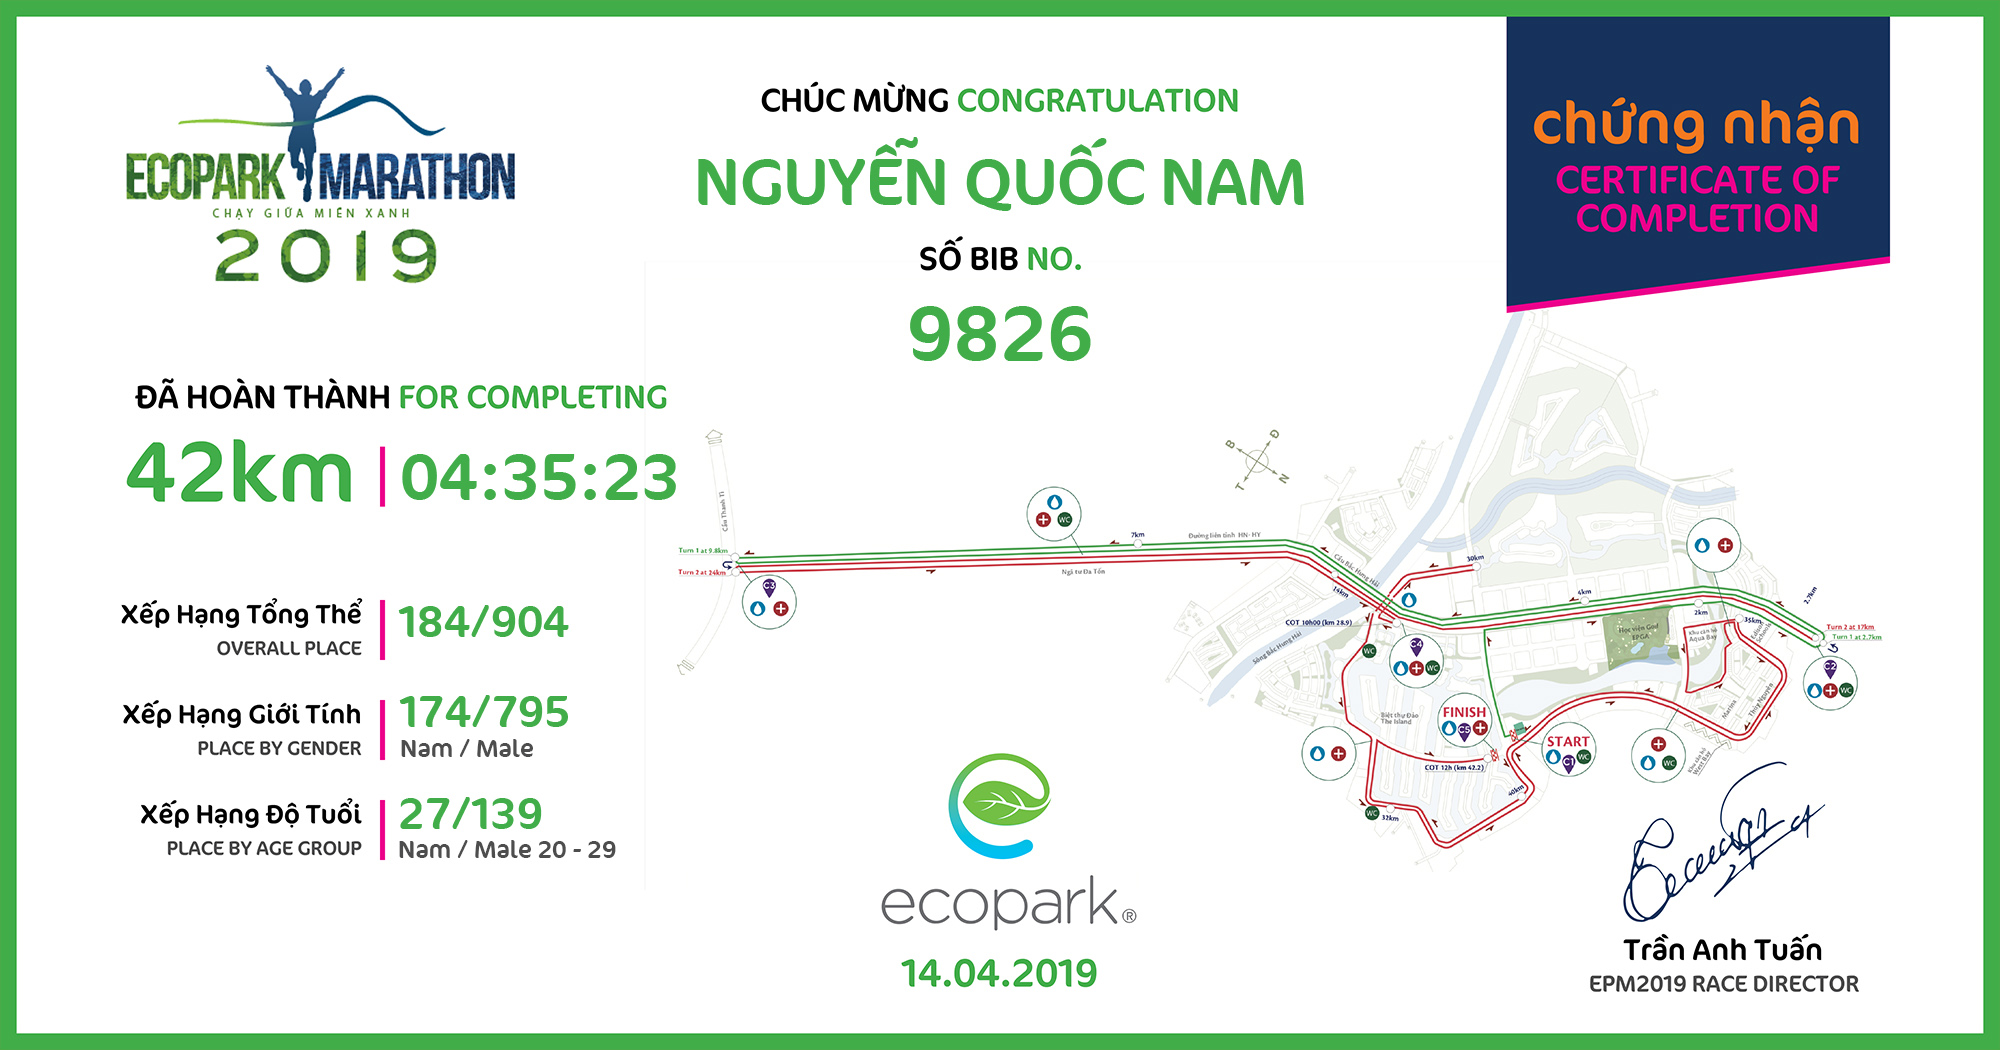 9826 - Nguyễn Quốc Nam